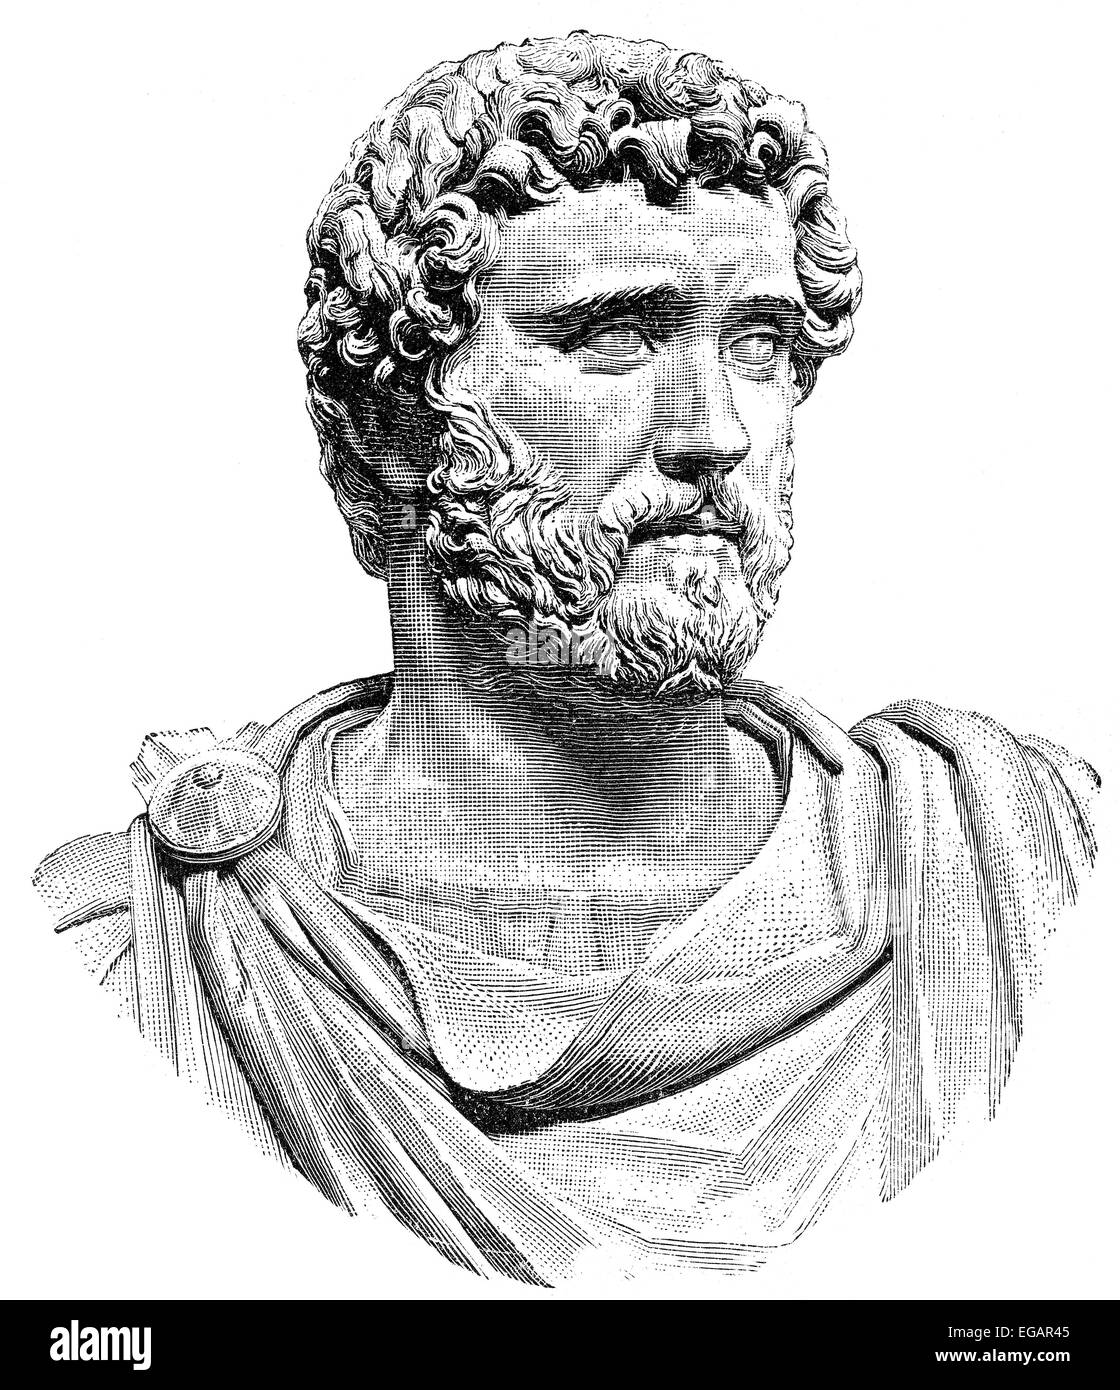 Antoninus Pius oder Titus Fulvius Aelius Hadrianus Antoninus Augustus Pius, 86-161, römischer Kaiser von 138 bis 161 Stockfoto